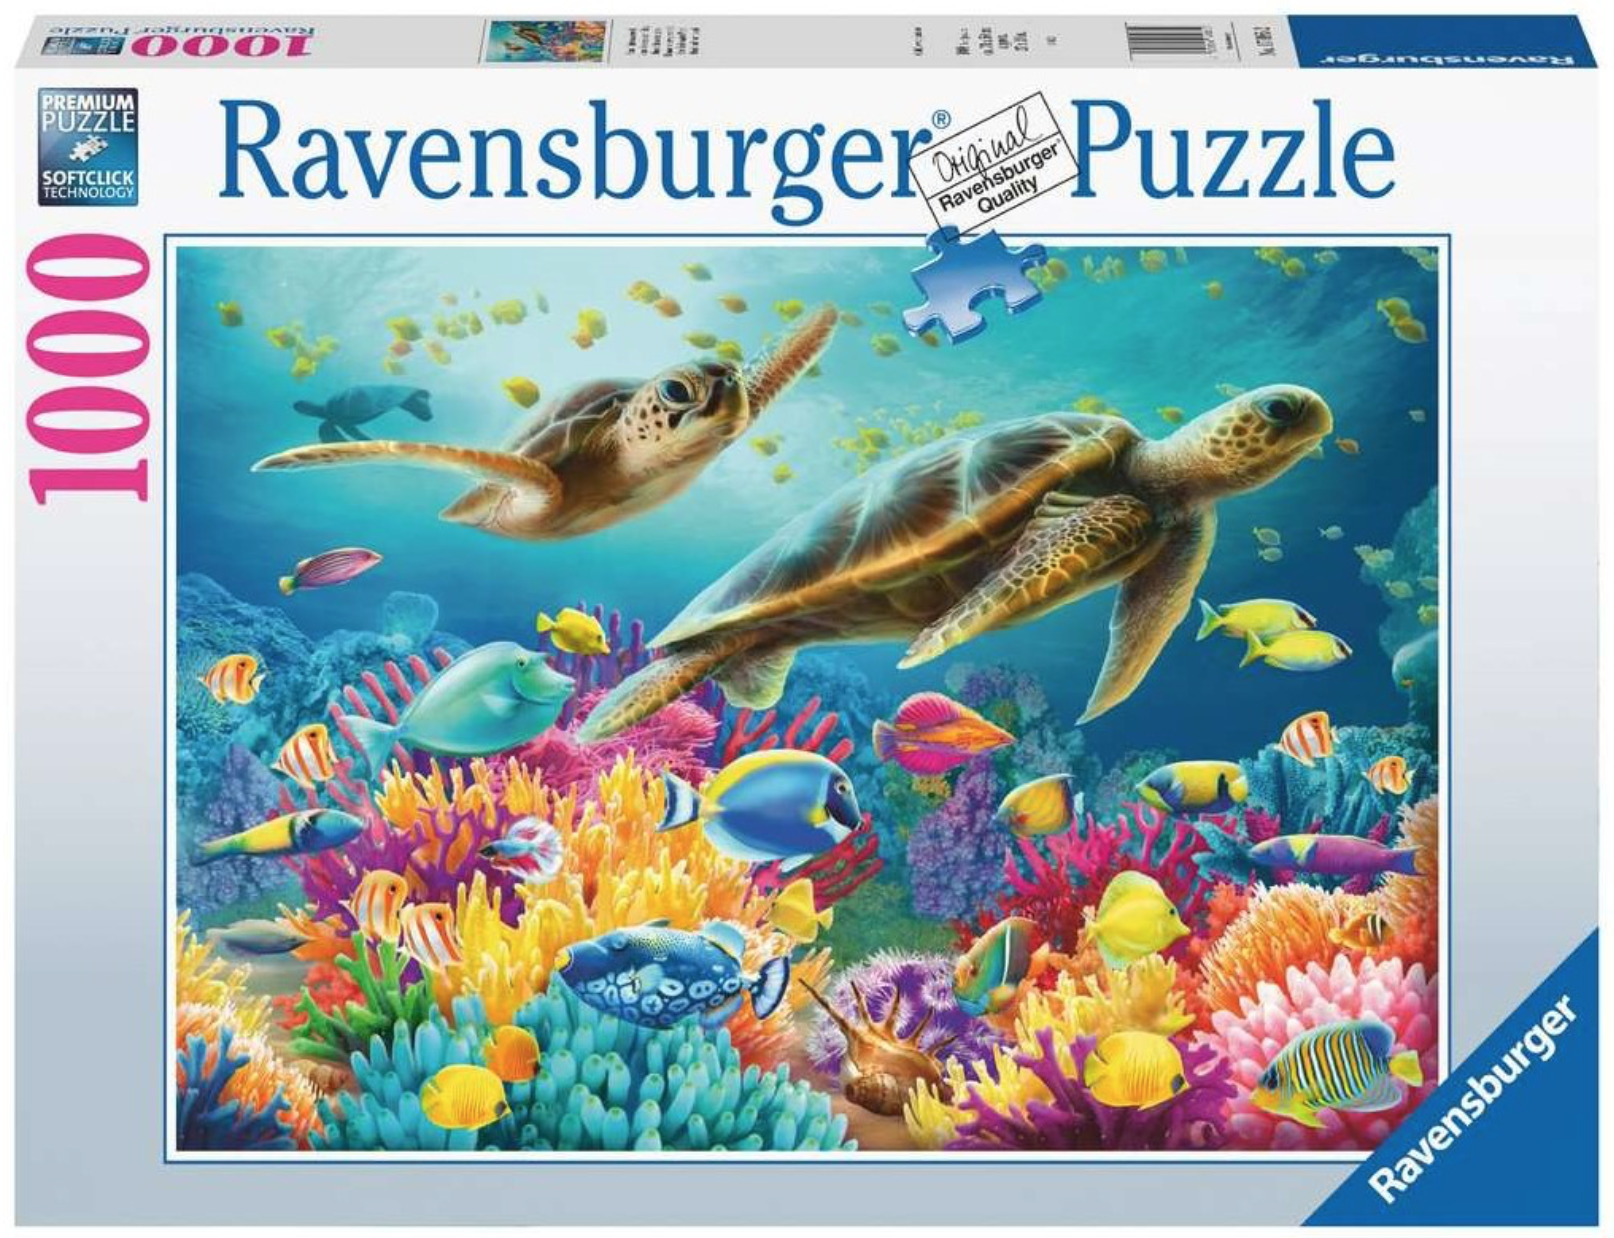 Ravensburger 3D Puzzle - Storage Box Underwater World